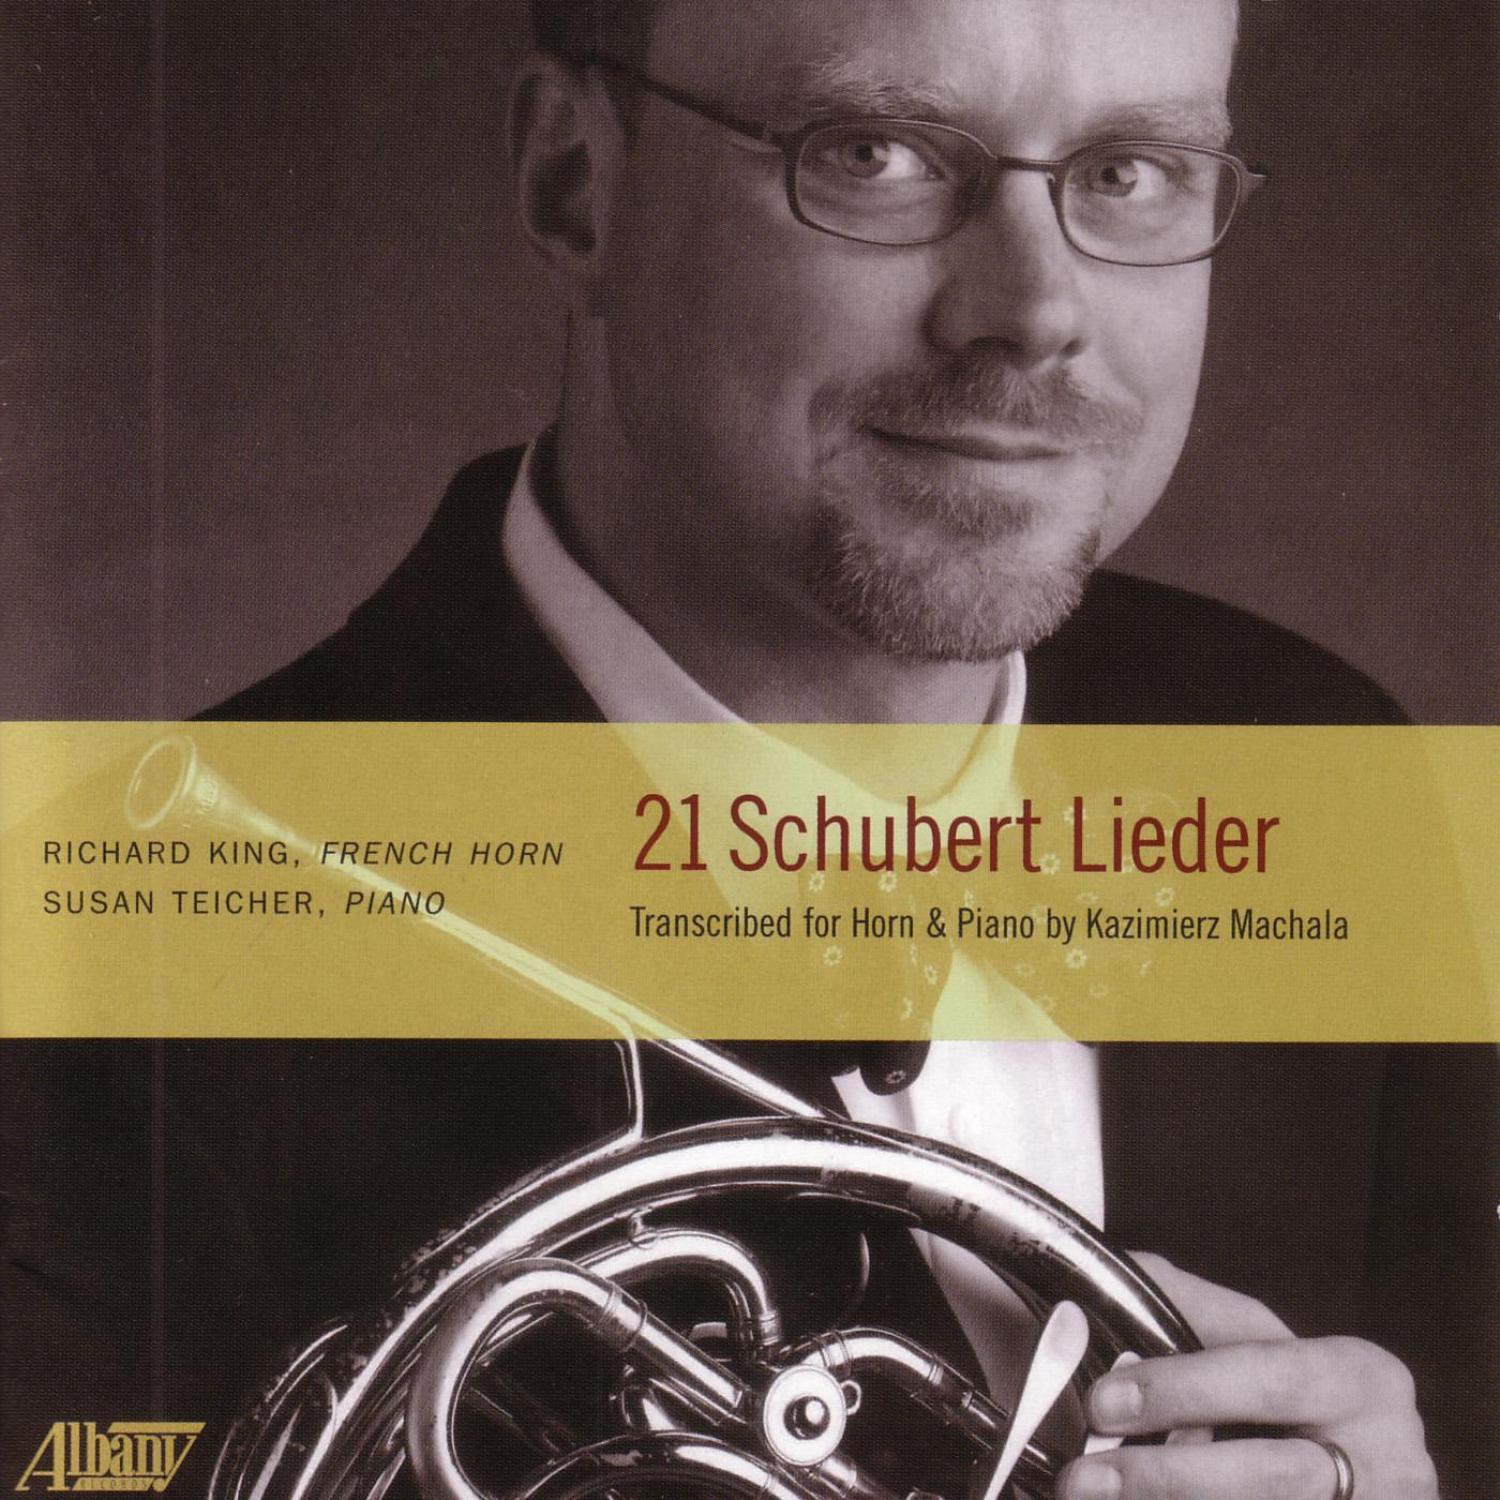 21 Schubert Lieder